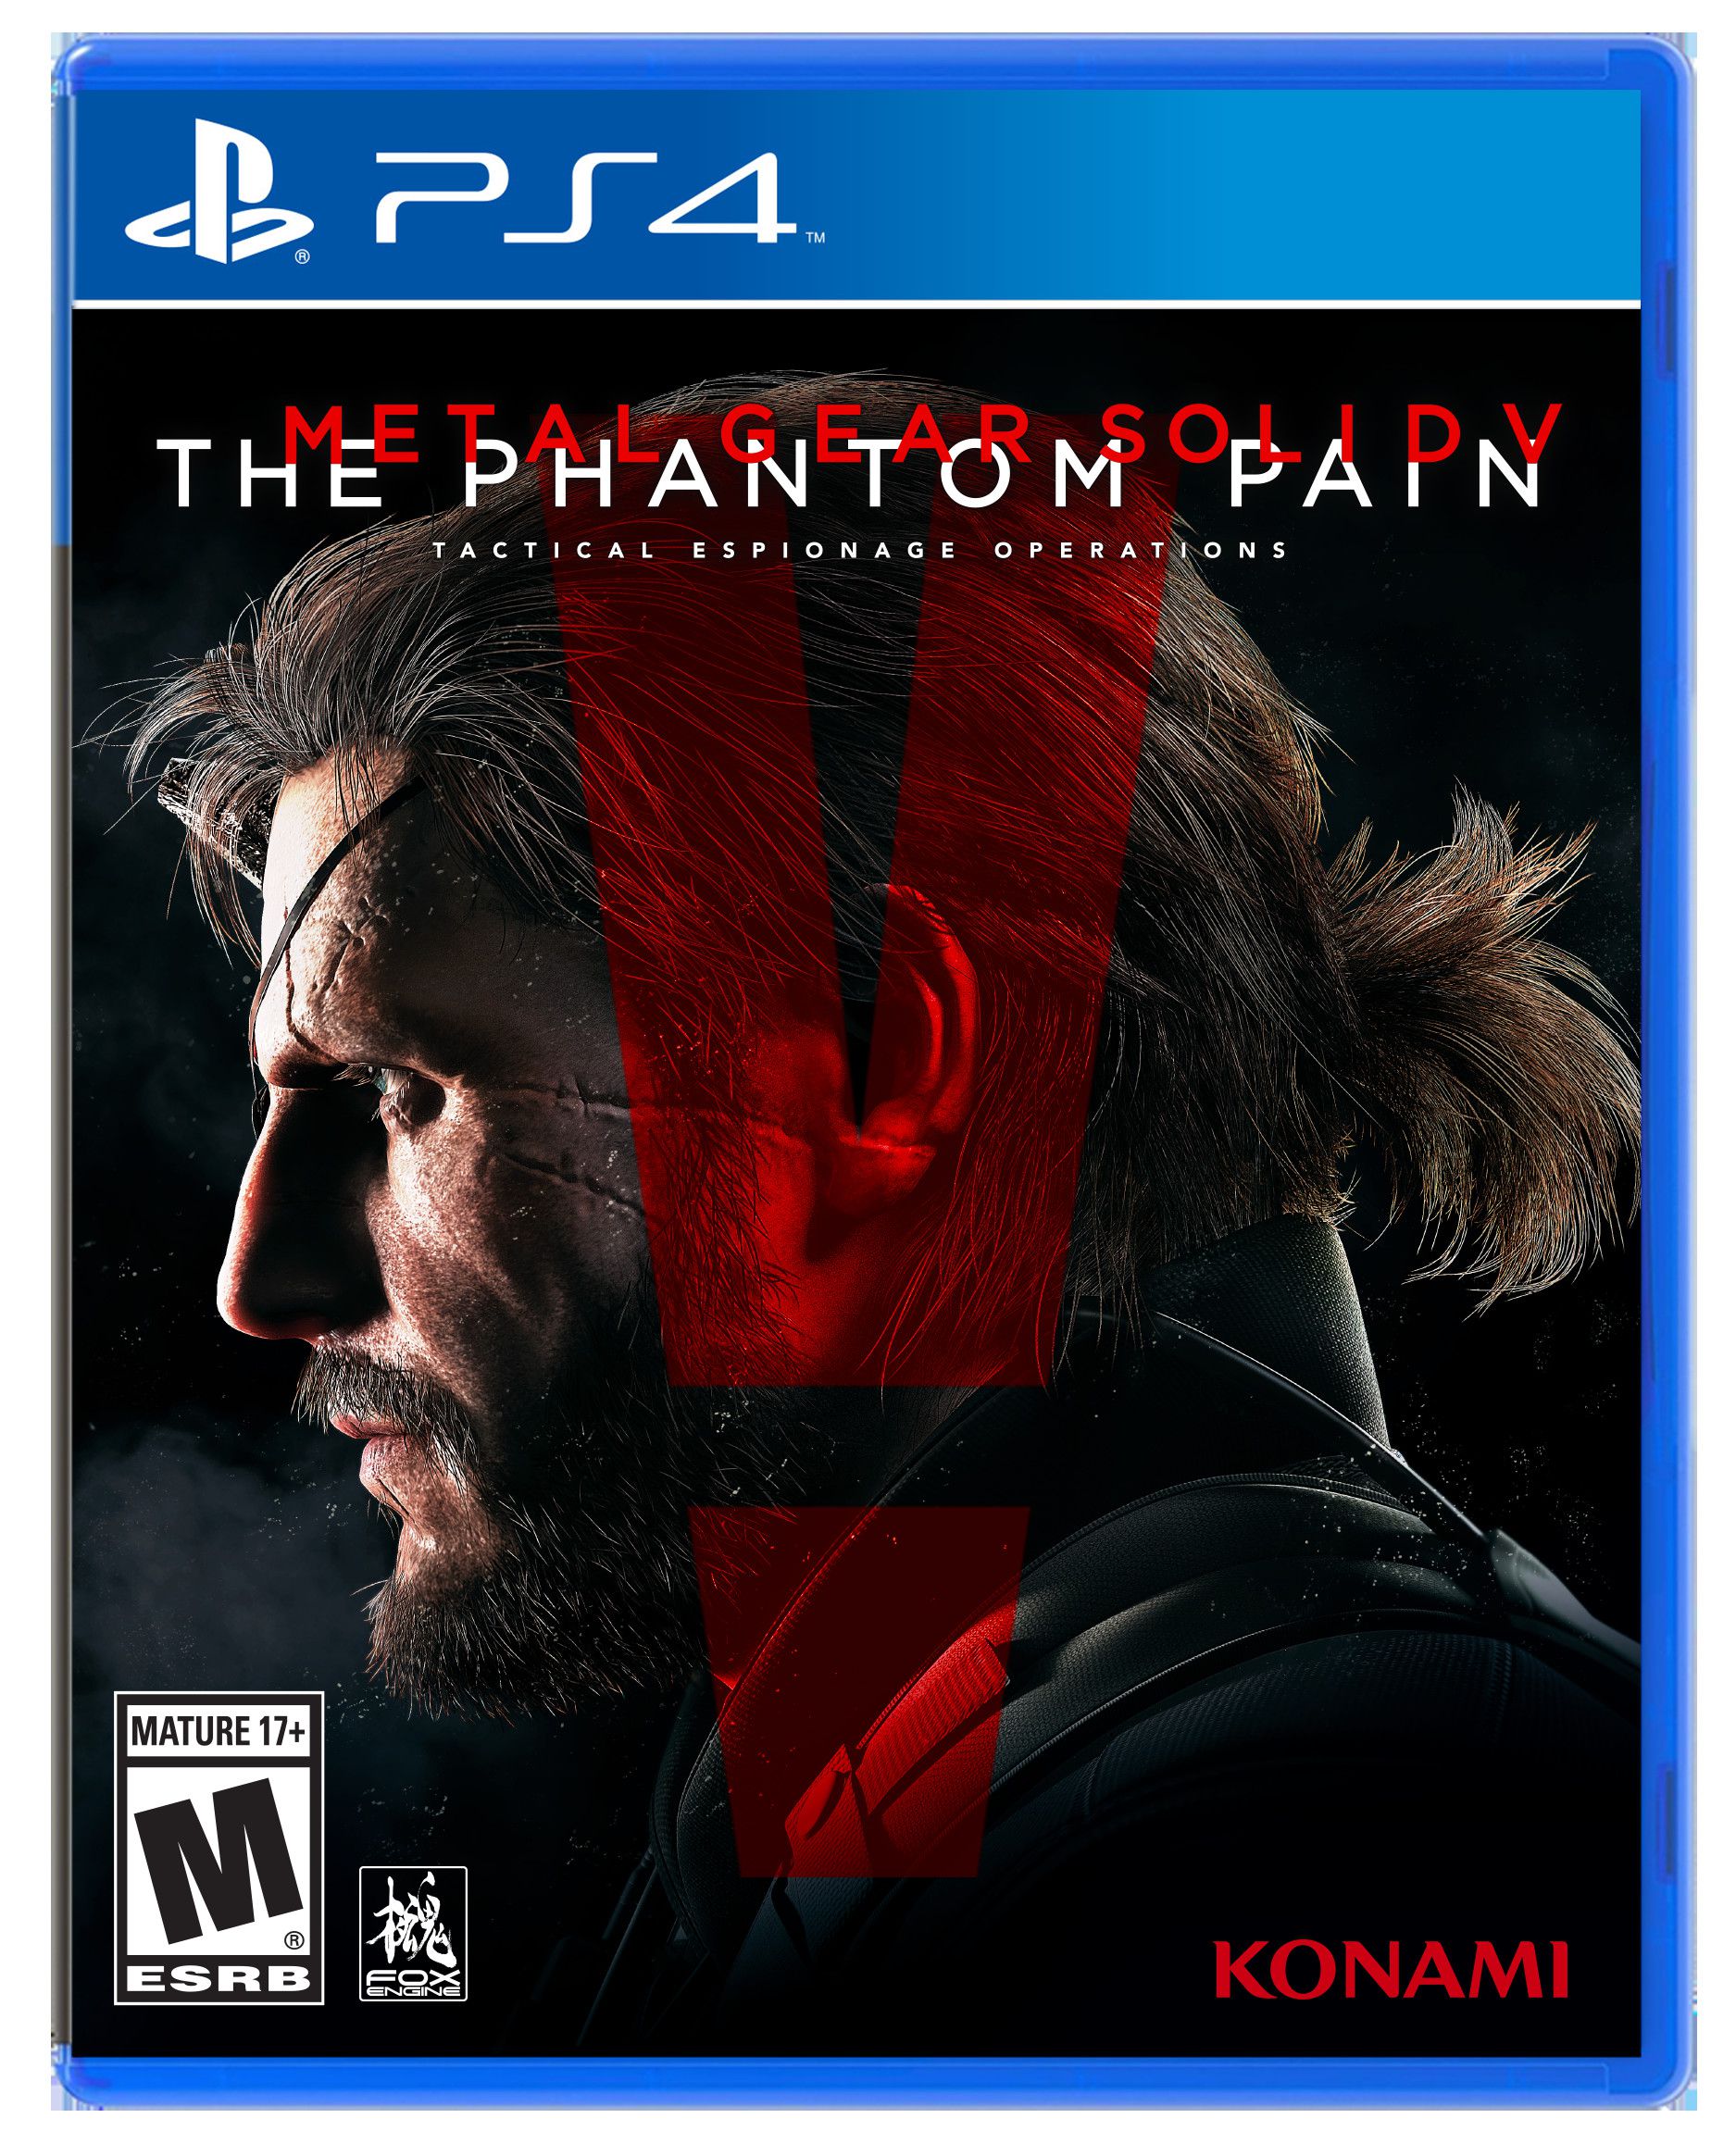 Jogo Metal Gear Solid V: The Phantom Pain (Seminovo) - PS4 - ZEUS GAMES - A  única loja Gamer de BH!